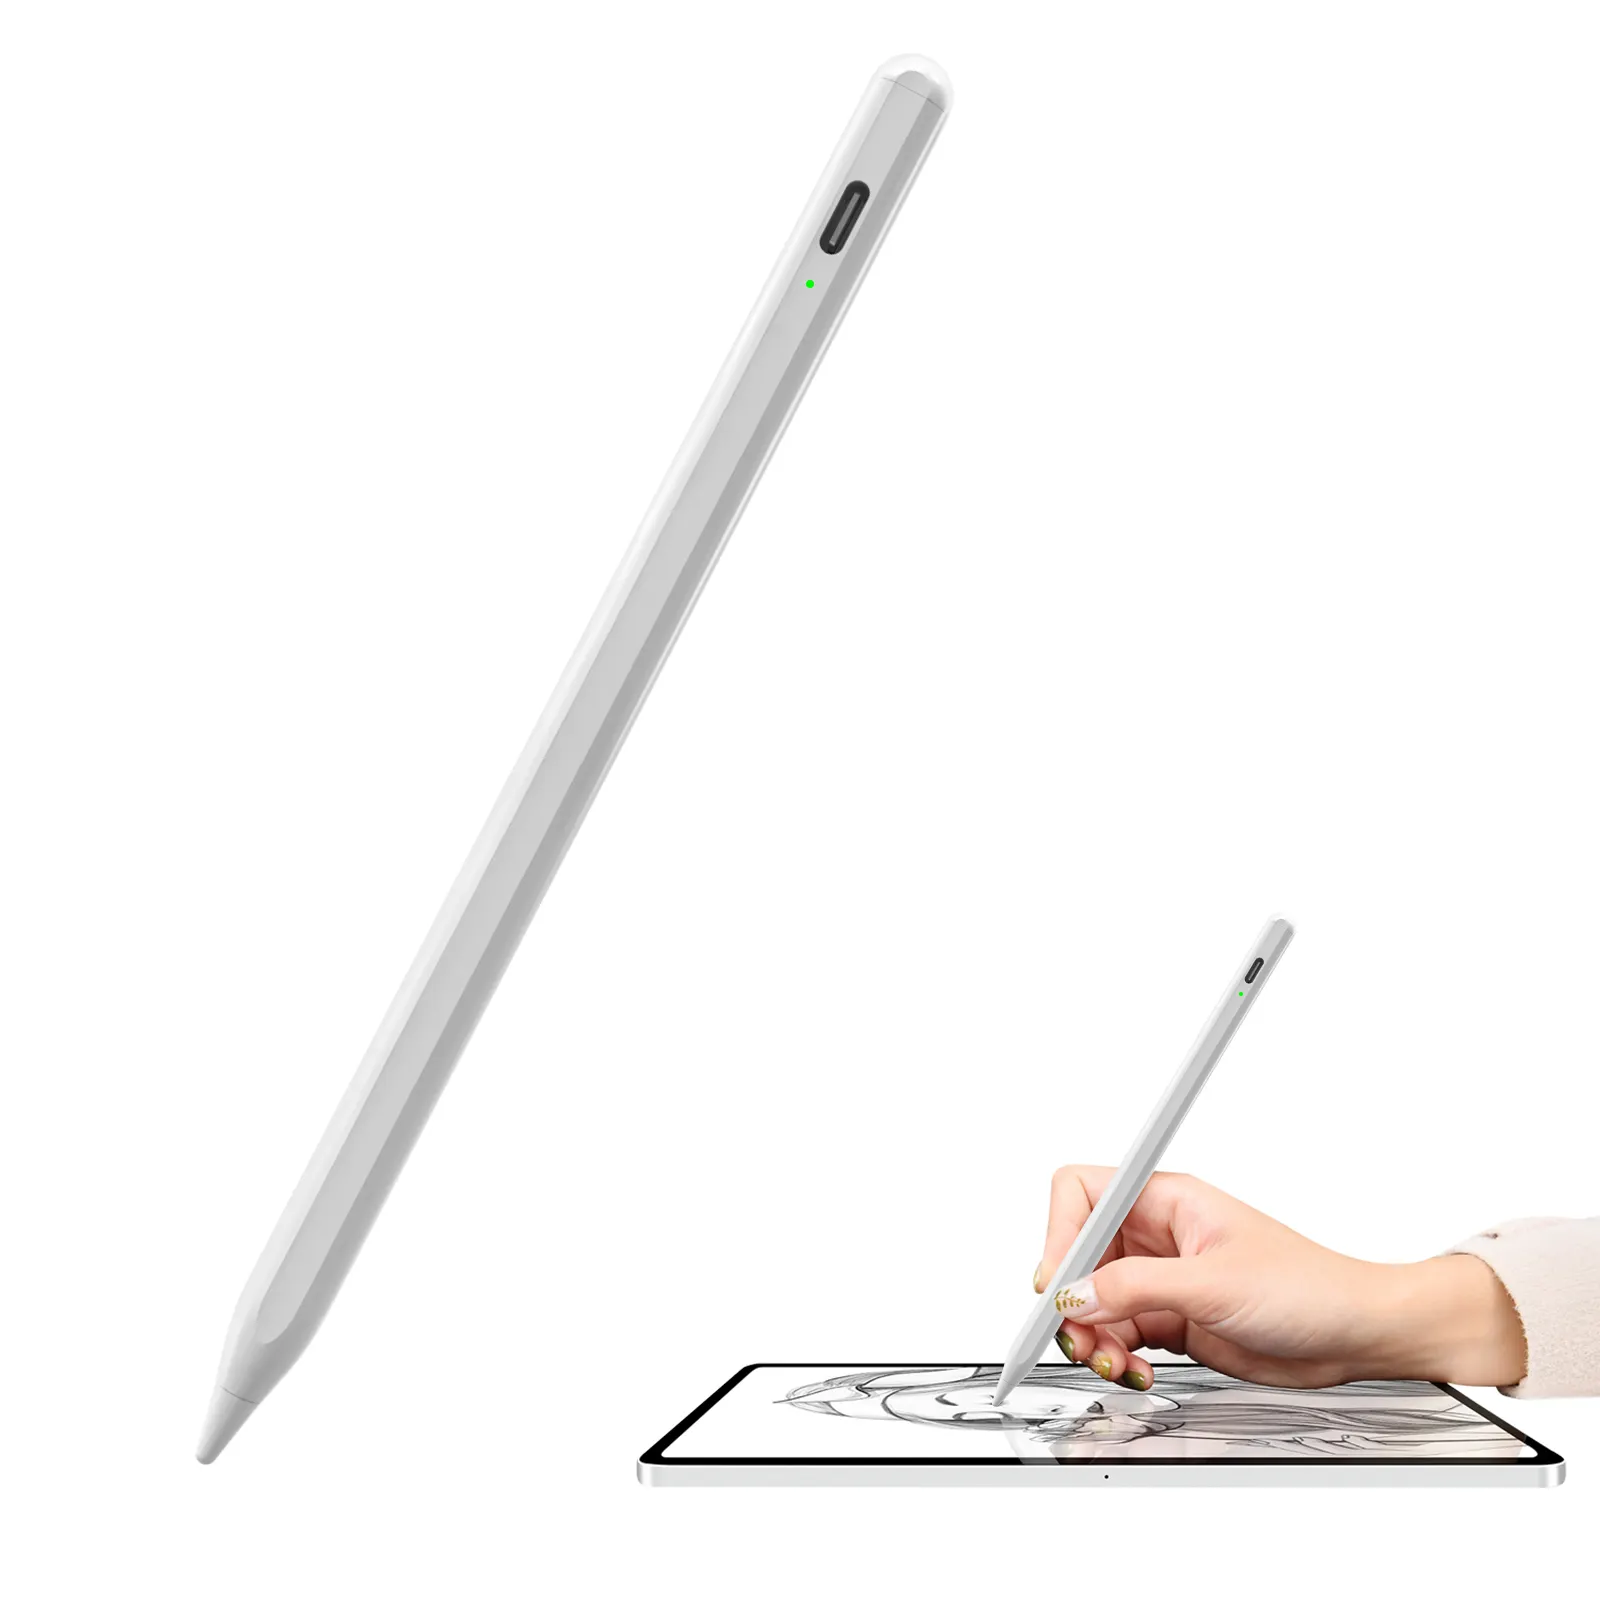 ปากกาสไตลัสสำหรับ Ipad,ปากกาสำหรับใช้งานหน้าจอสัมผัสมีการปฏิเสธฝ่ามือ